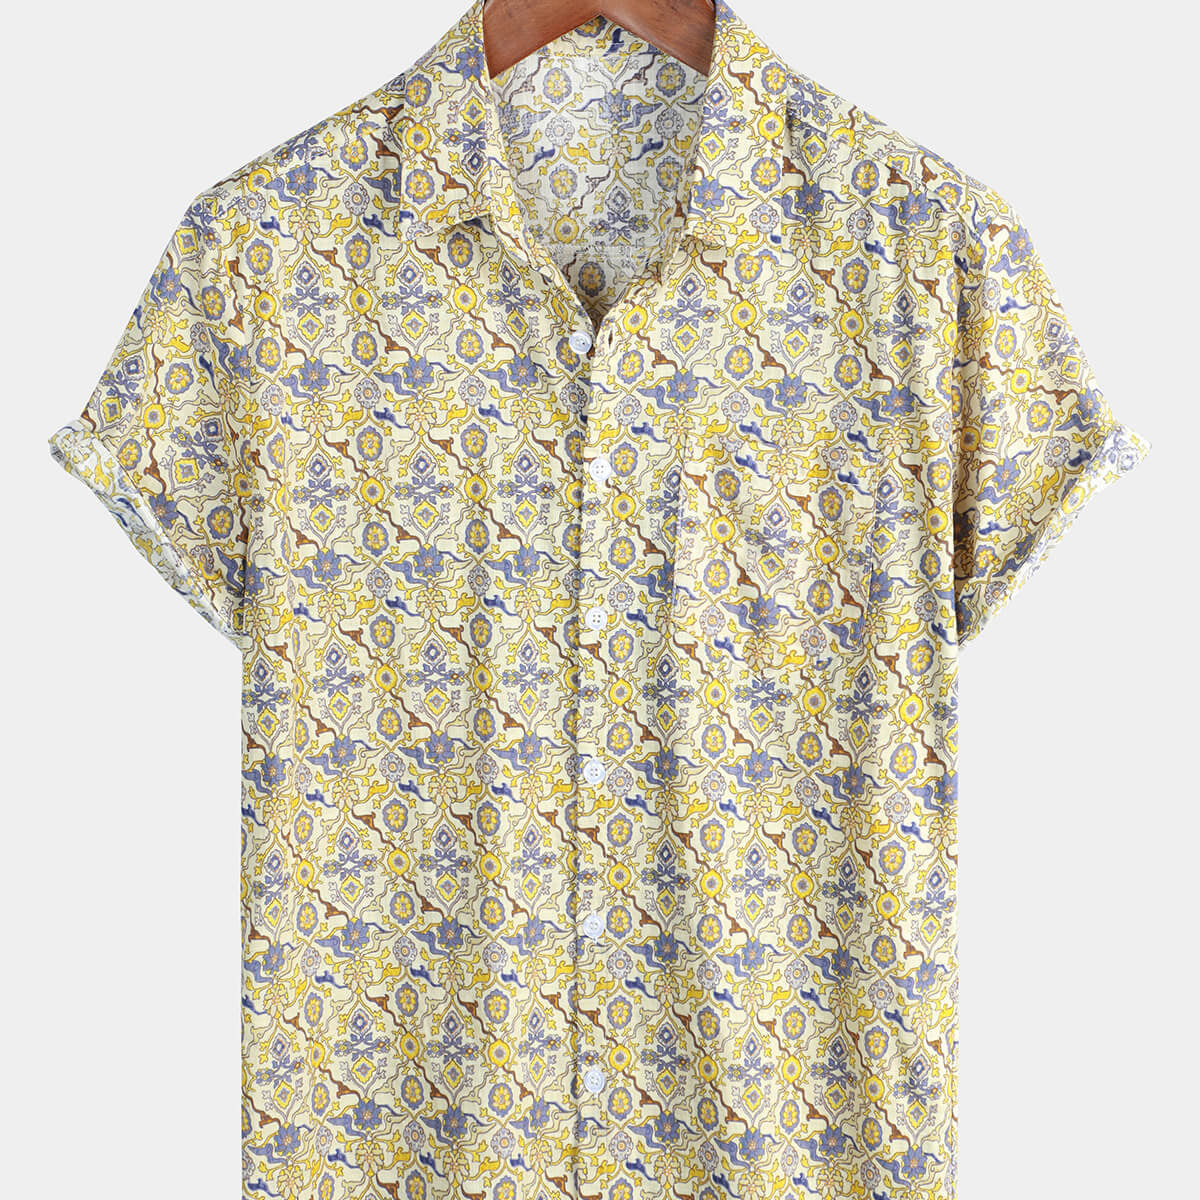 Men's Vintage Floral Short Sleeve Beach Cotton Button Up Shirt